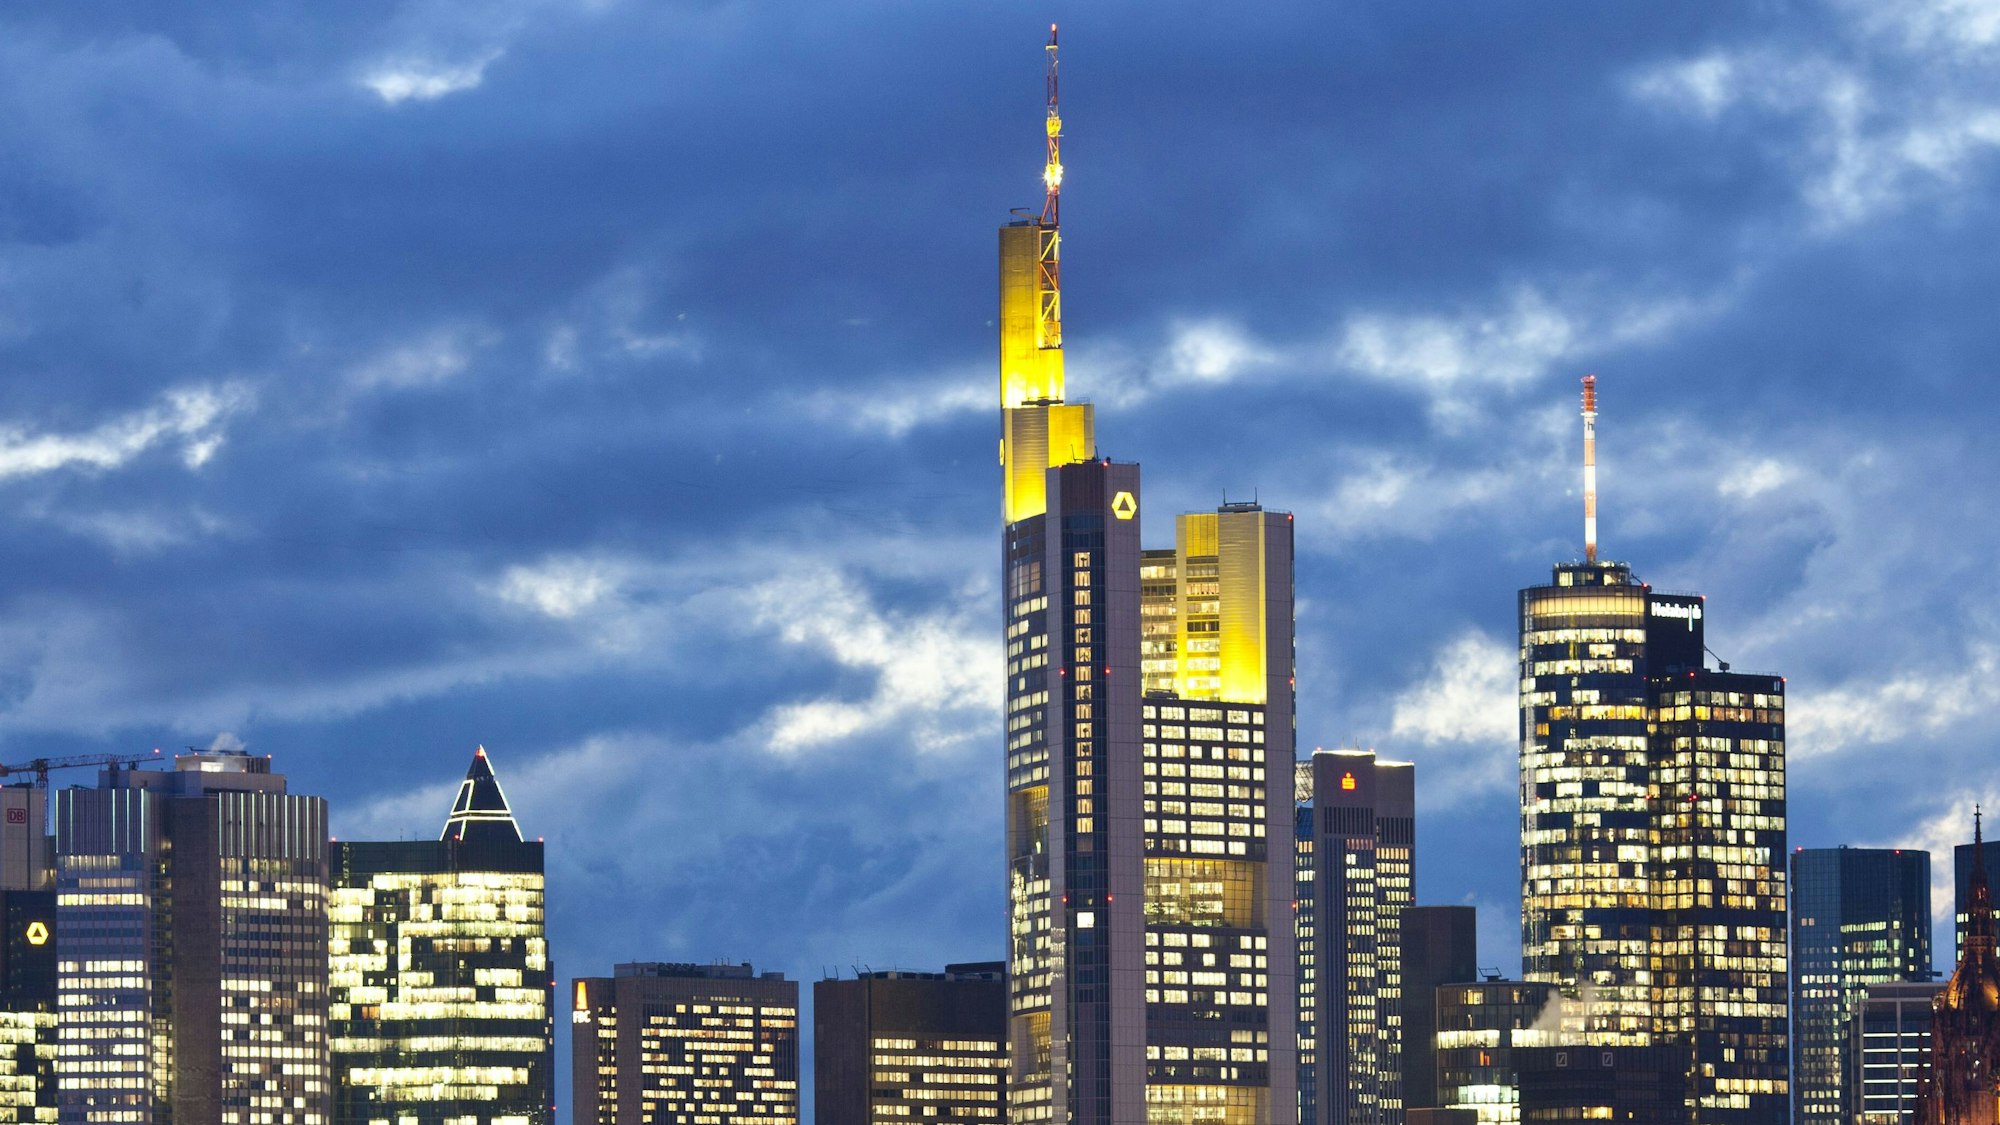 Skyline von Frankfurt mit seinen vielen Bankenzentralen.